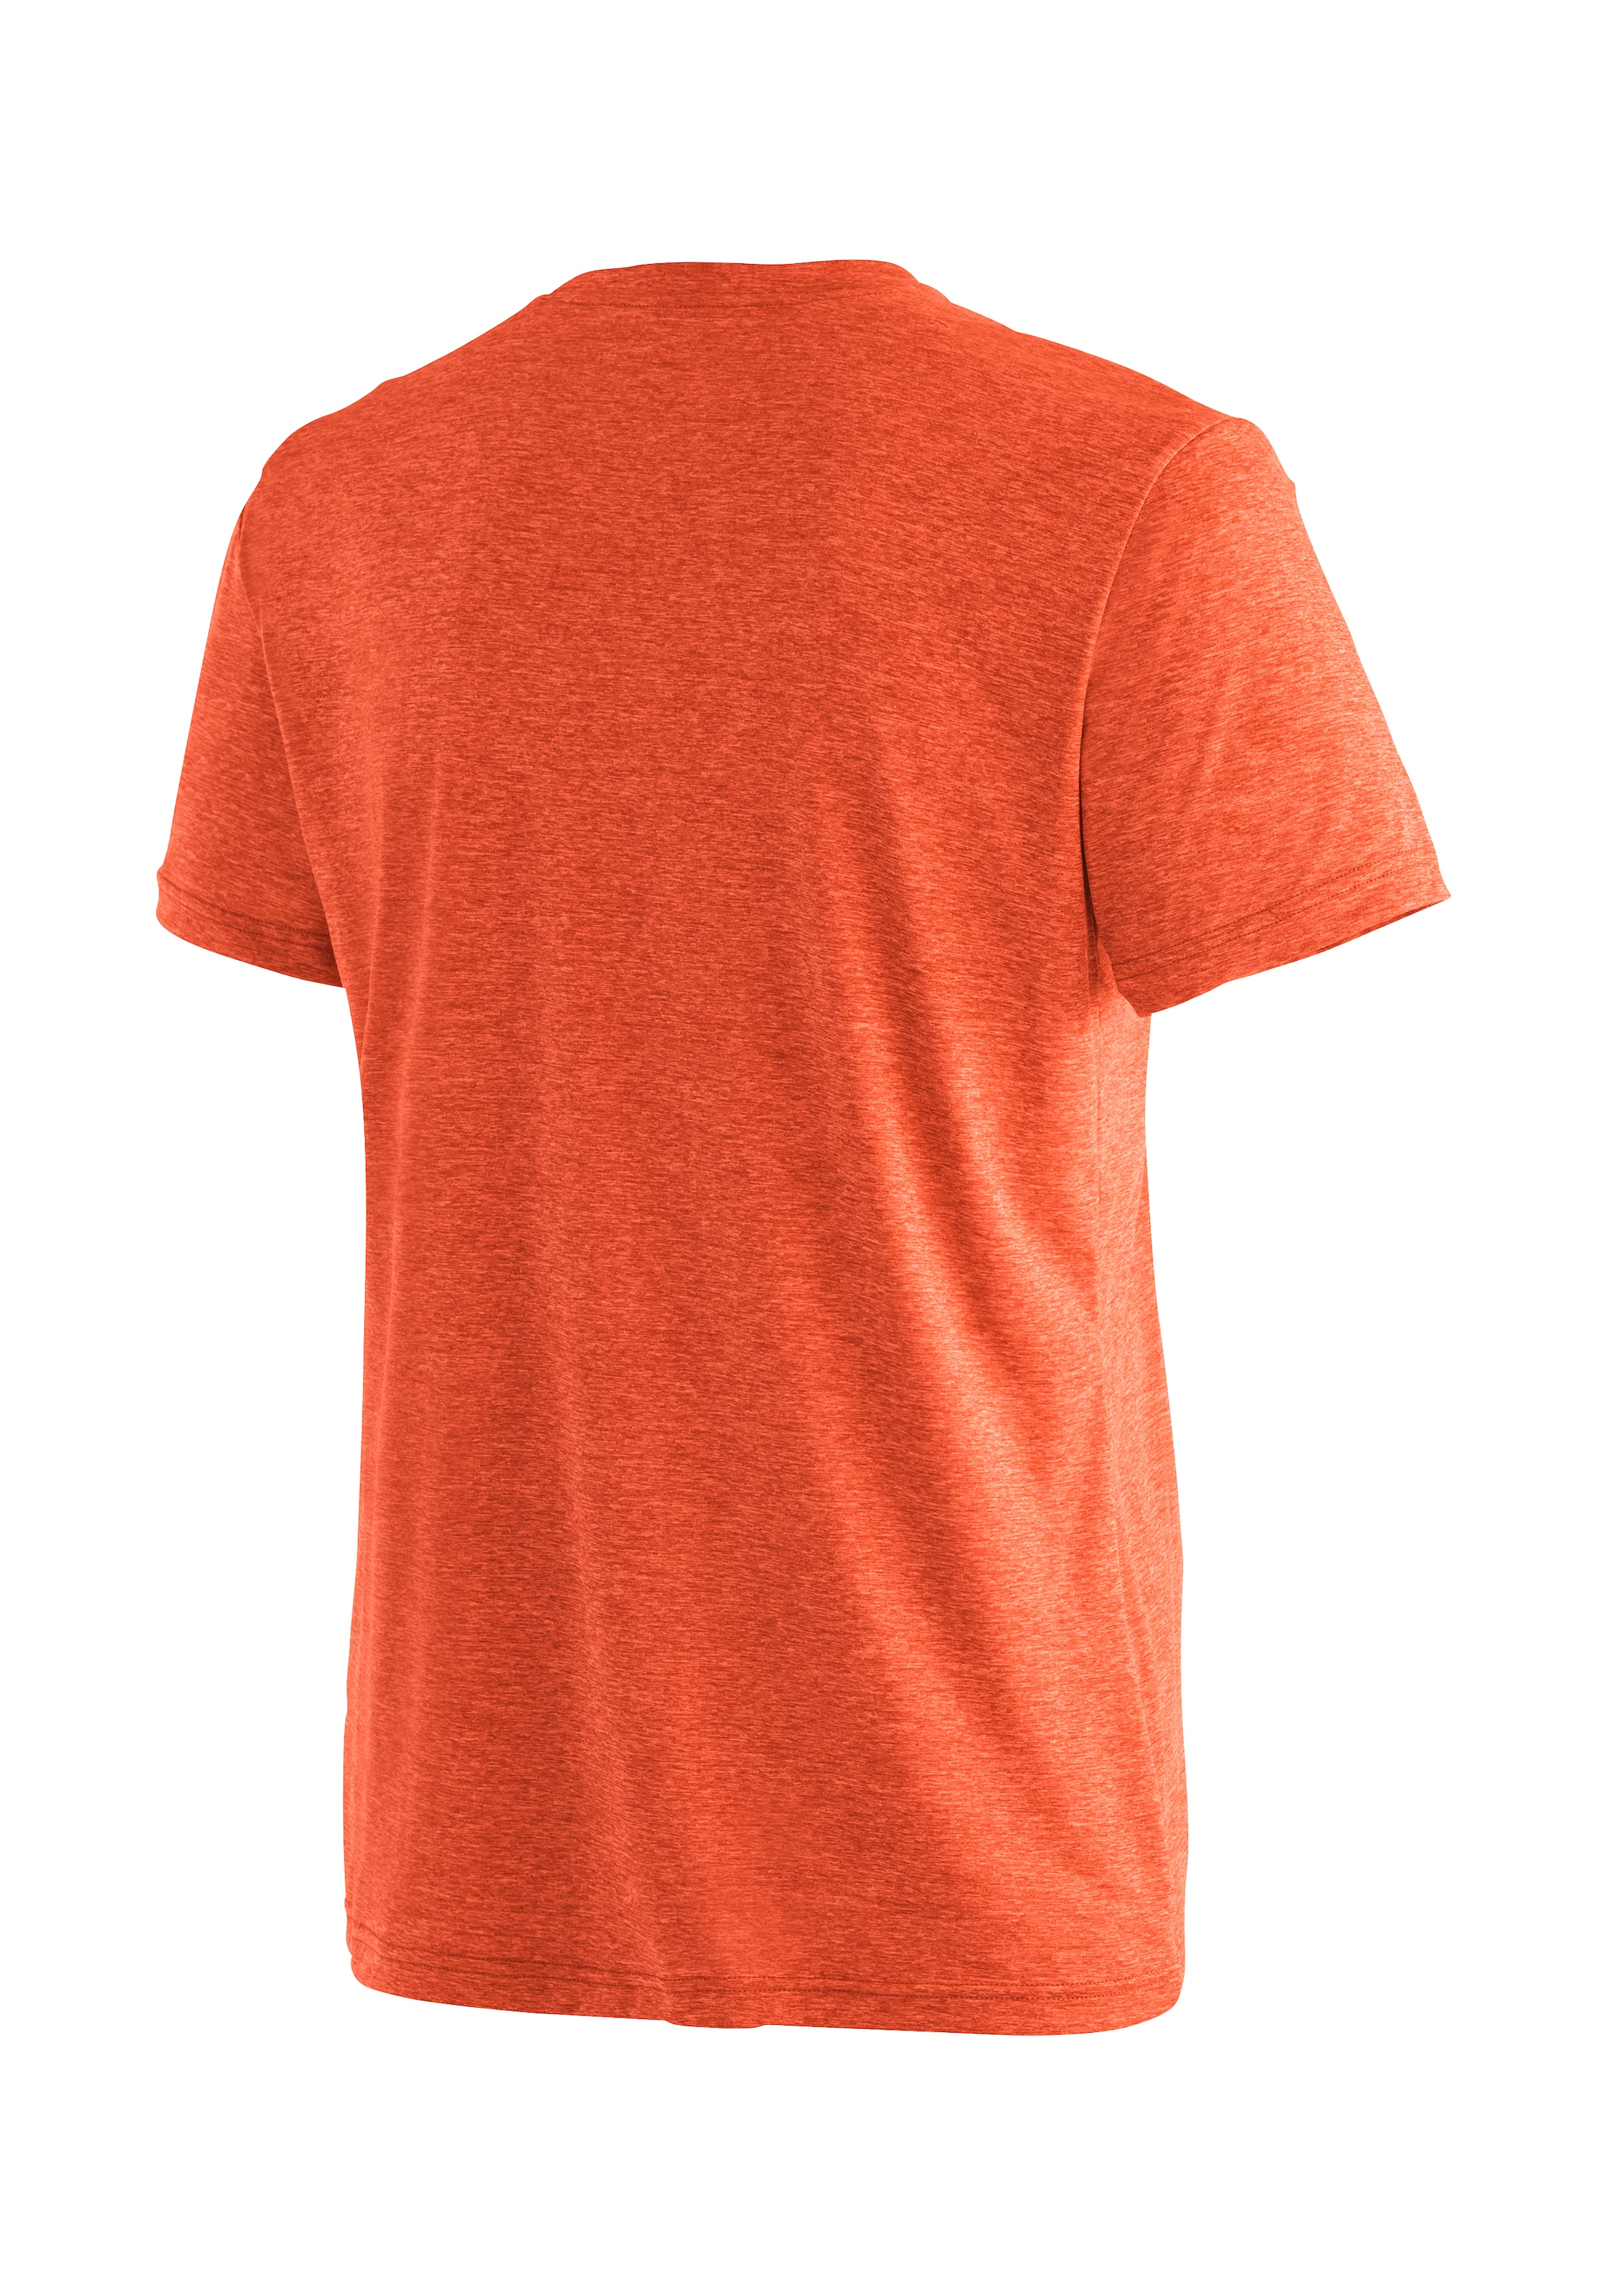 Maier Sports Funktionsshirt »Myrdal Sun«, Leichtes T-Shirt für Freizeit und Sport